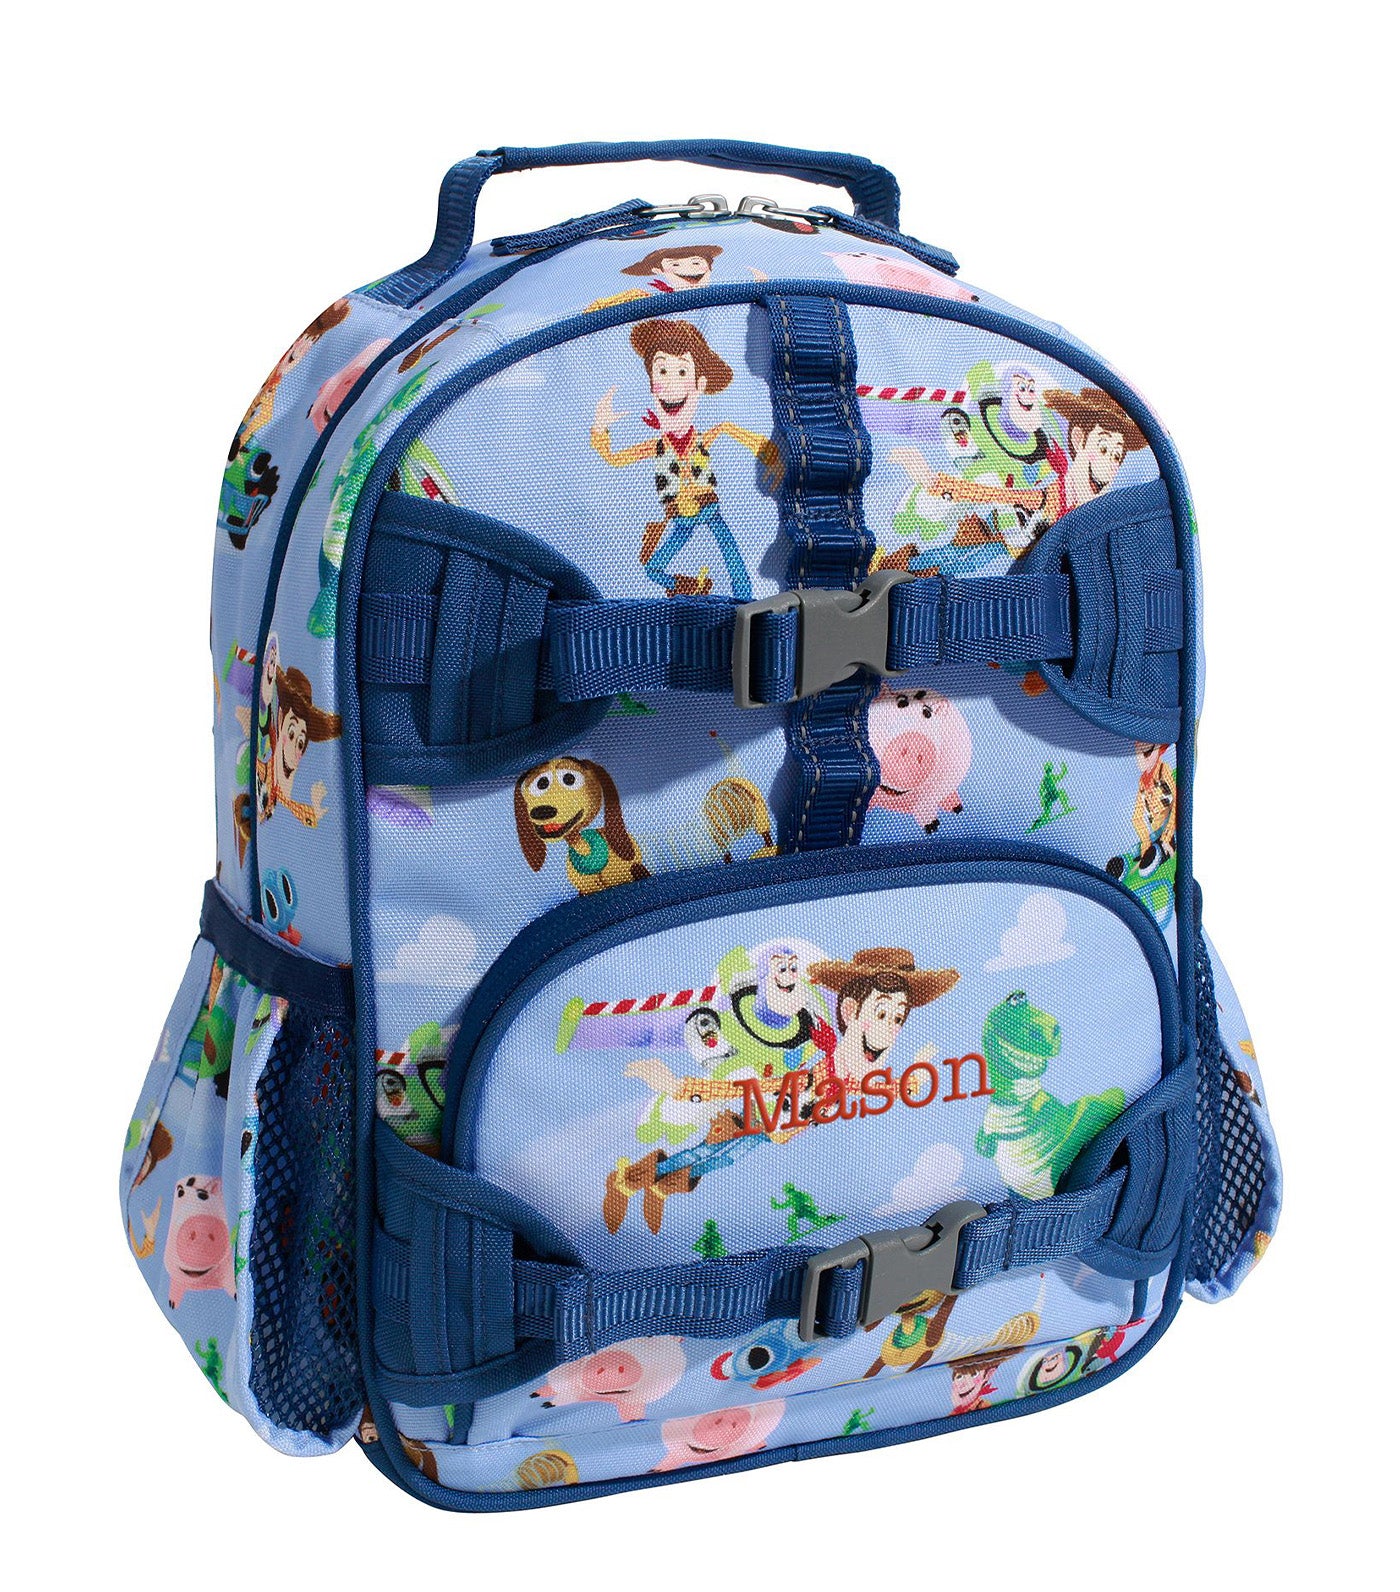 Mackenzie Disney and Pixar Toy Story Backpacks - Mini